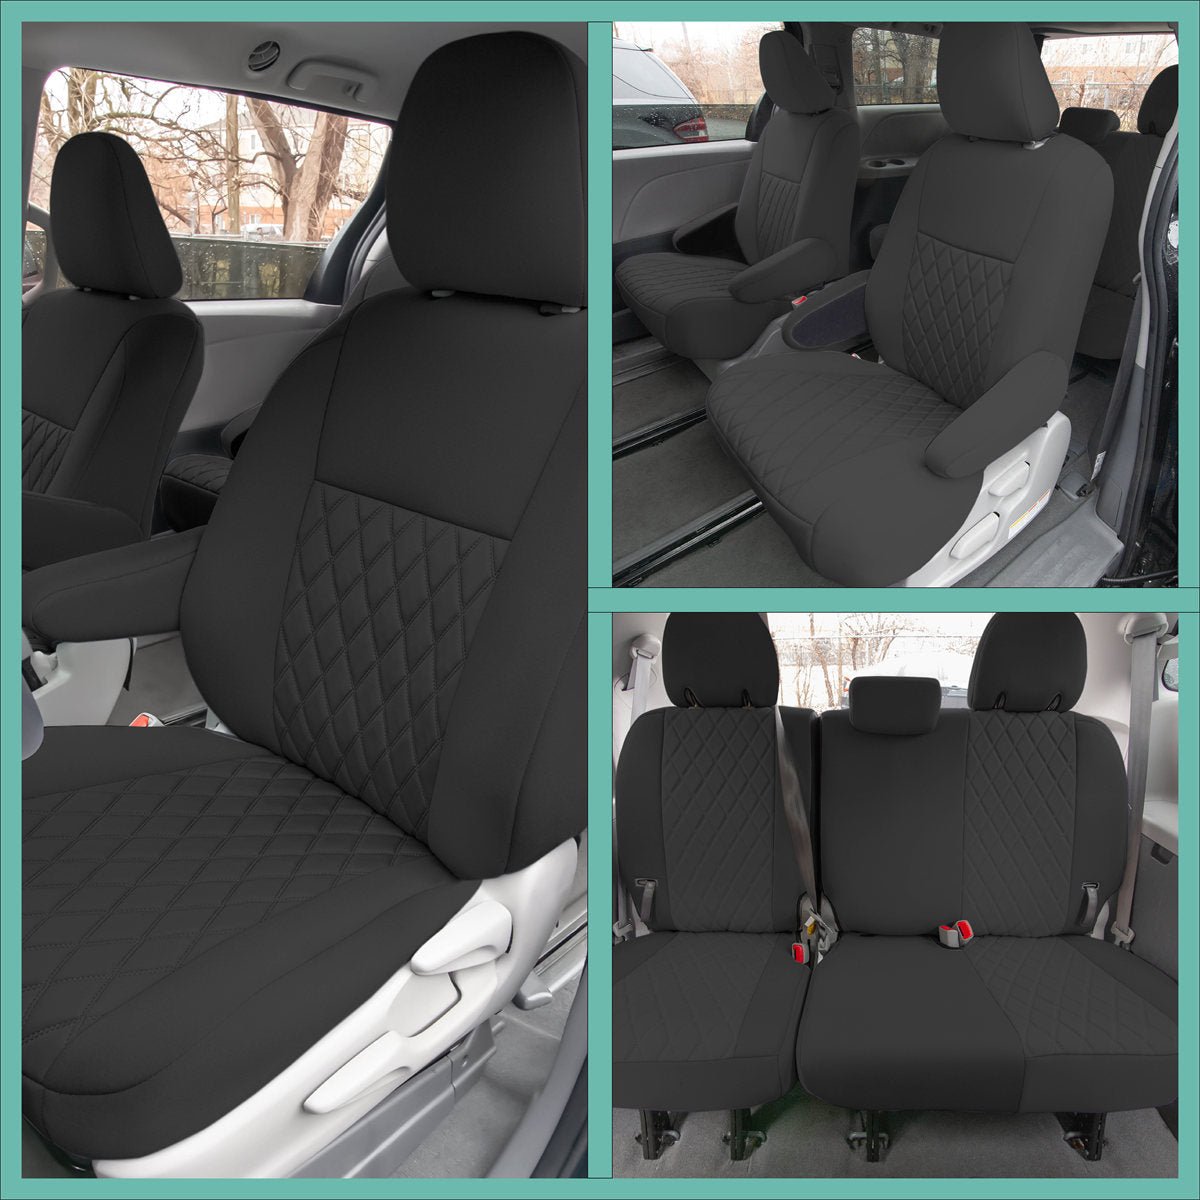 Toyota Sienna - 2011 - 2020 - Full Set Seat Covers - Black Ultraflex Neoprene